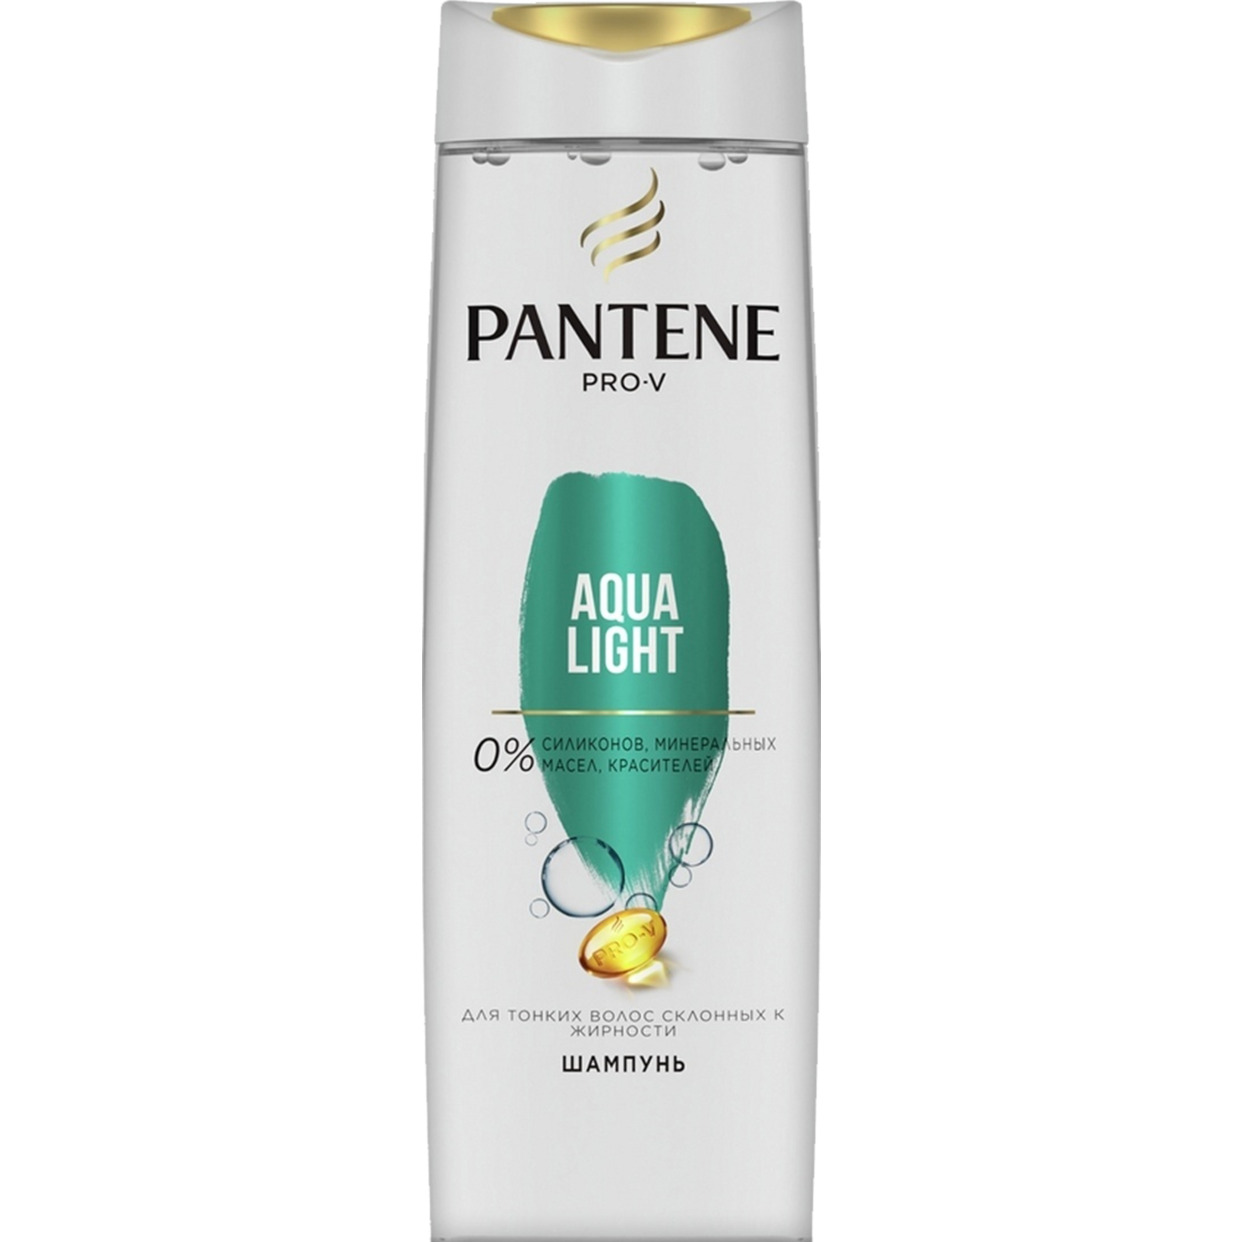 Шампунь для волос Pantene Pro-V Aqua Light 250 мл по акции в Пятерочке